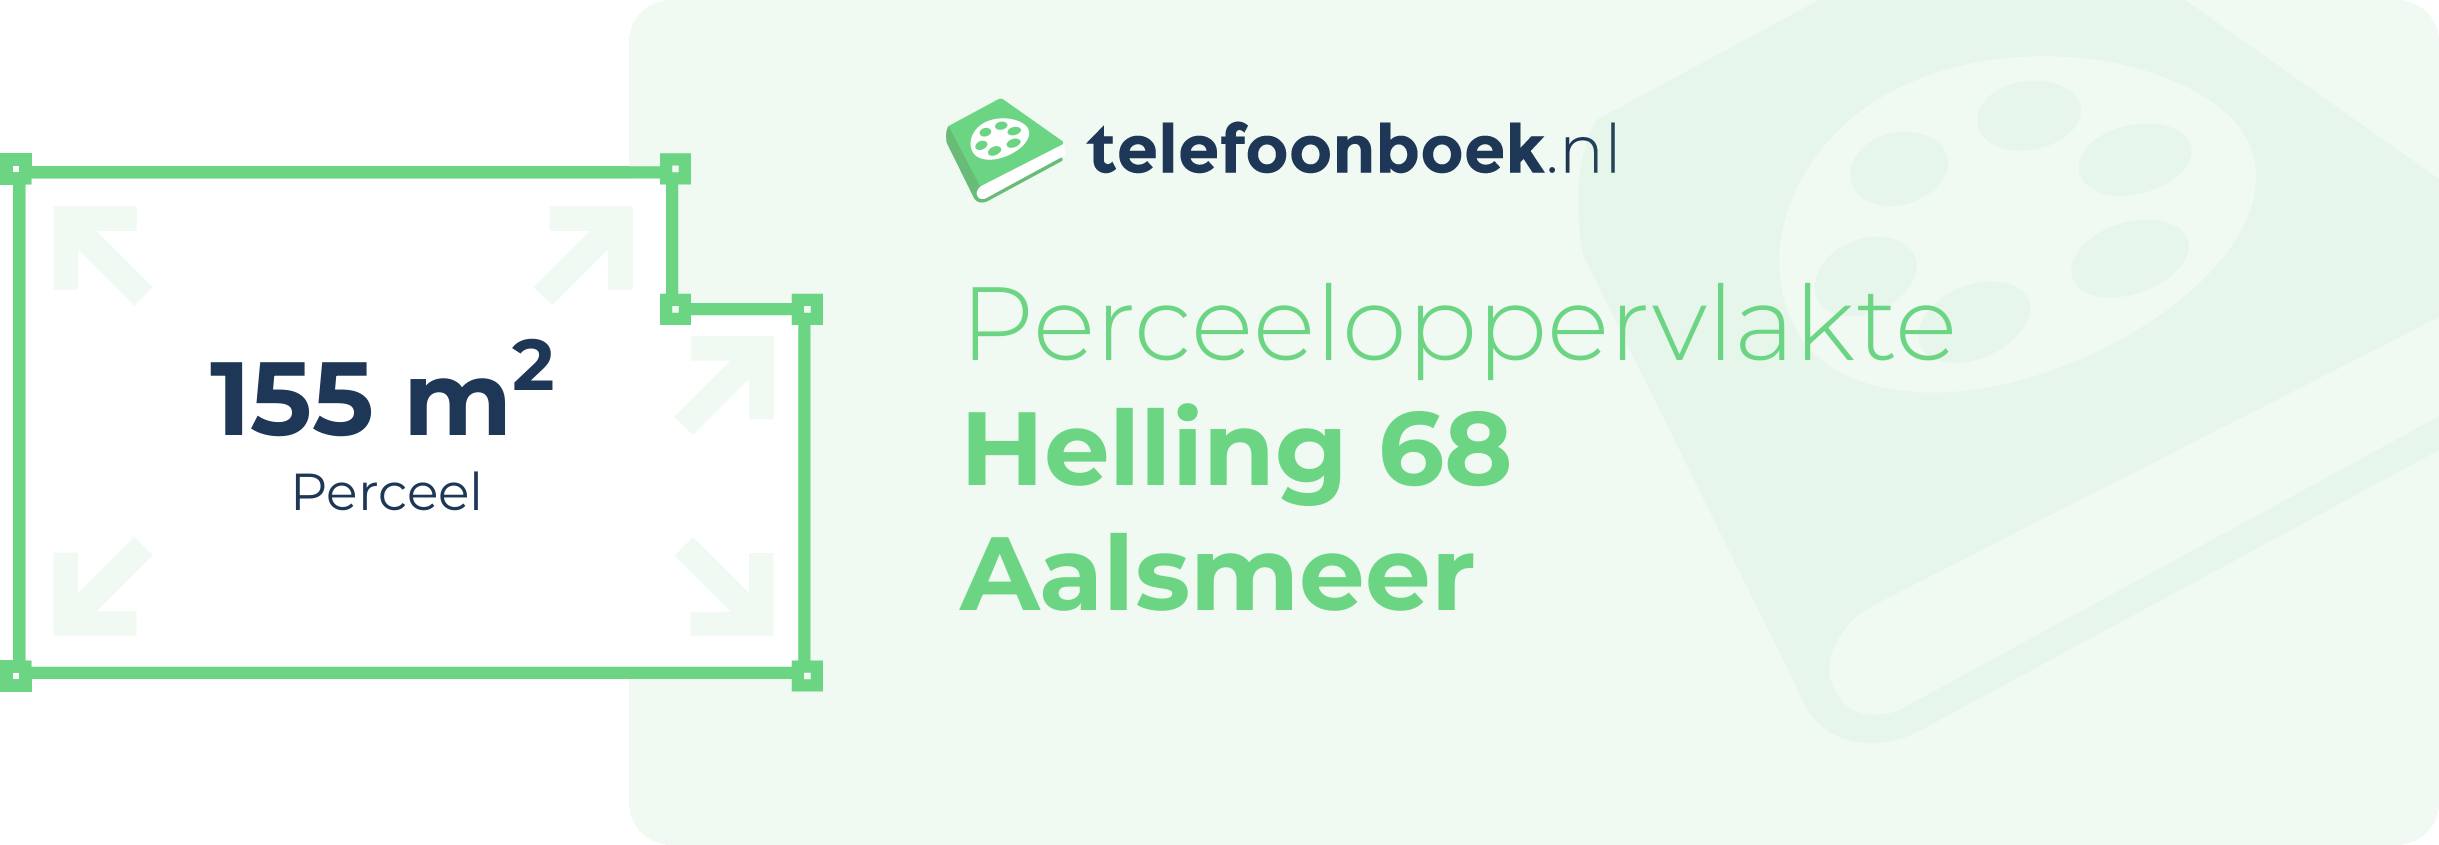 Perceeloppervlakte Helling 68 Aalsmeer